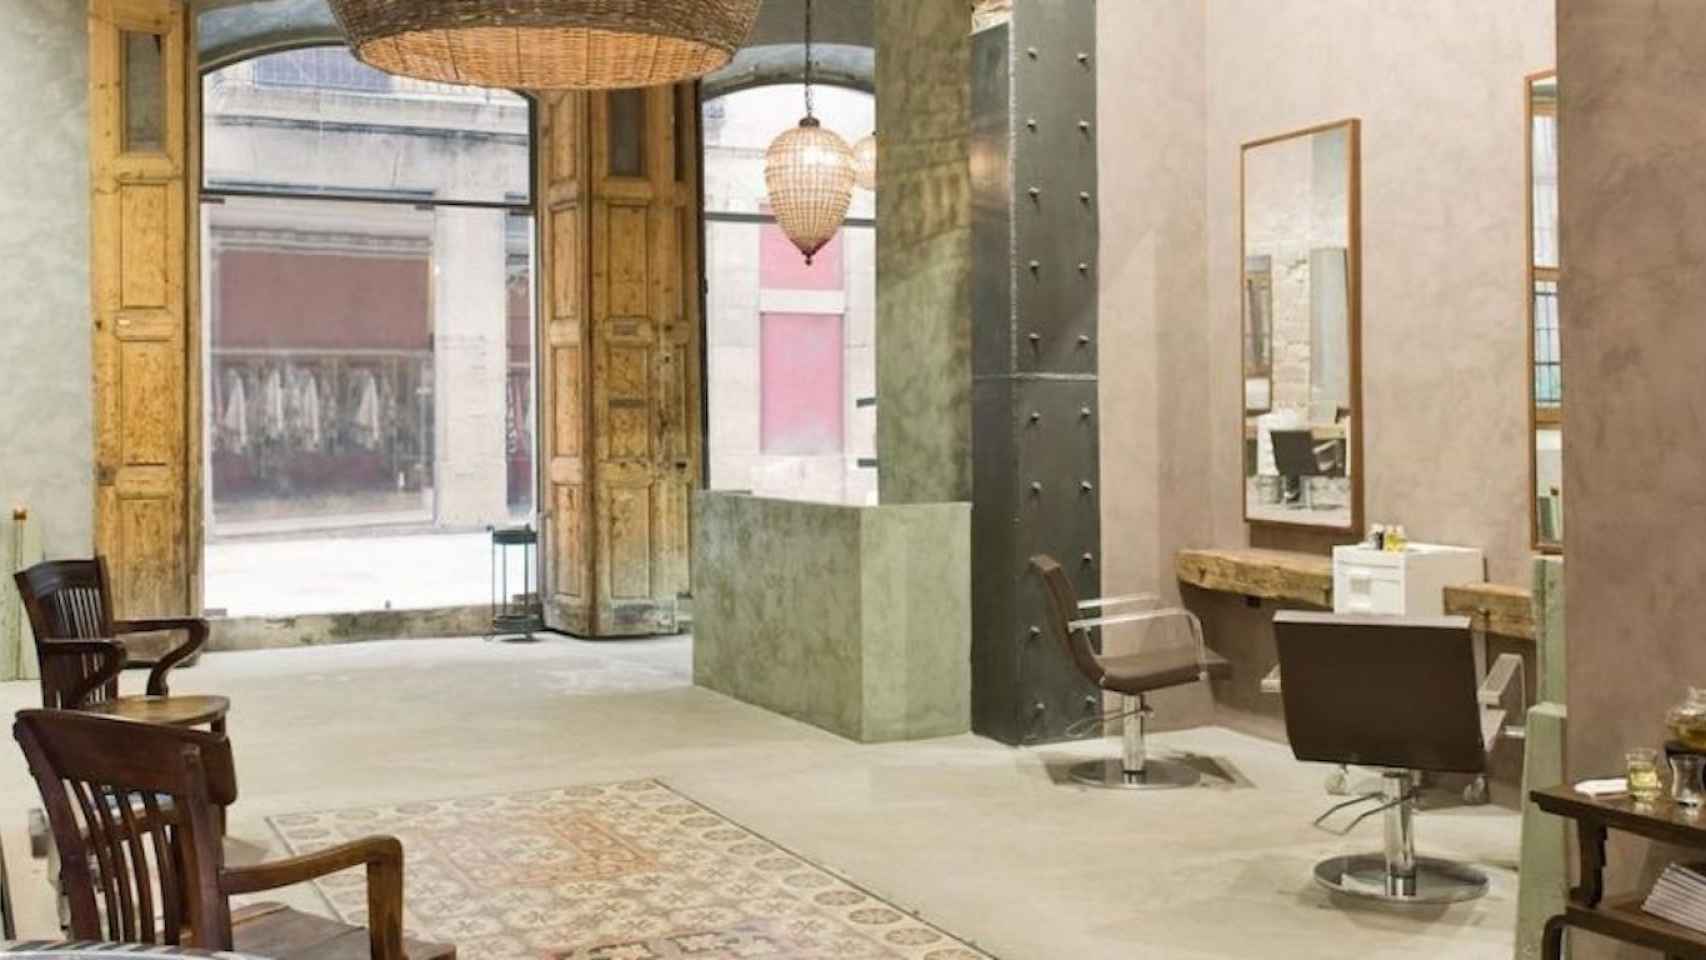 Le Salon, una peluquería de Barcelona